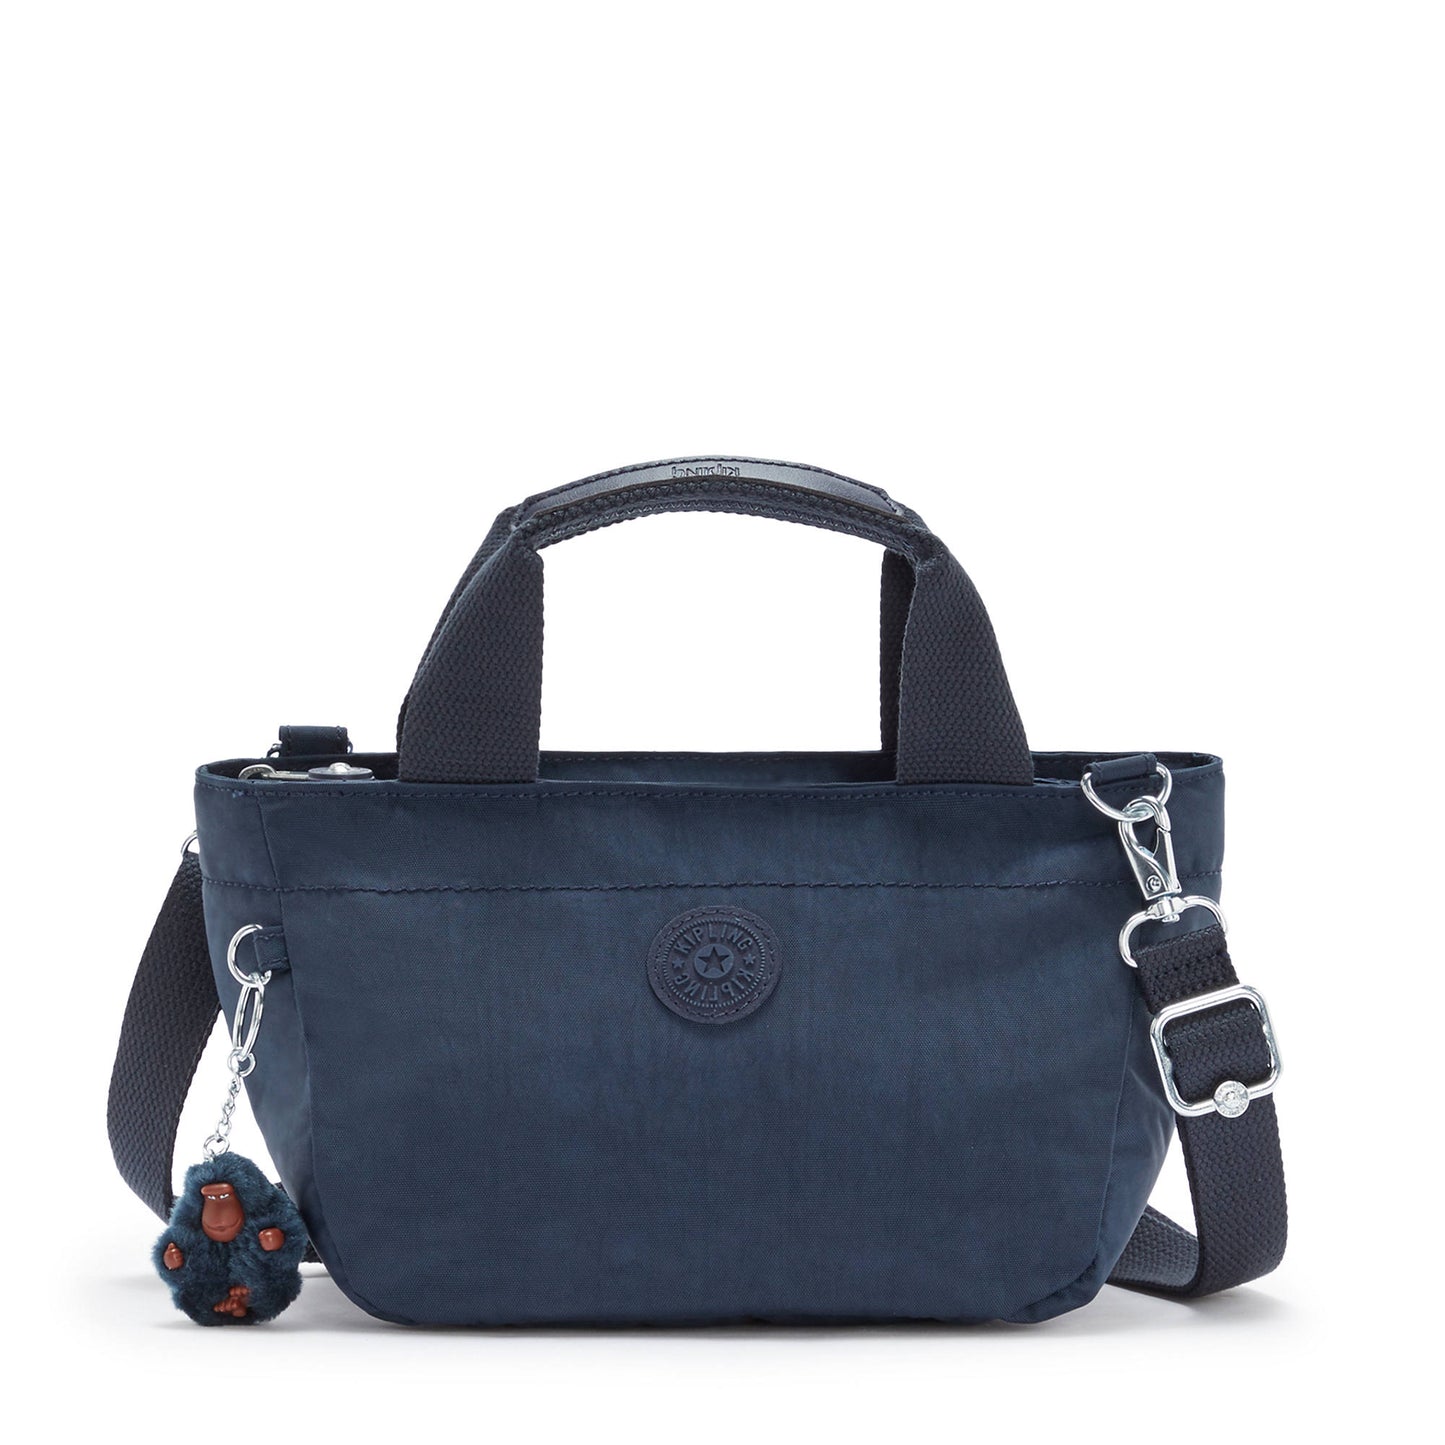 Bolsa Kipling Sugar S II Mini Crossbody Handbag Azul Marino